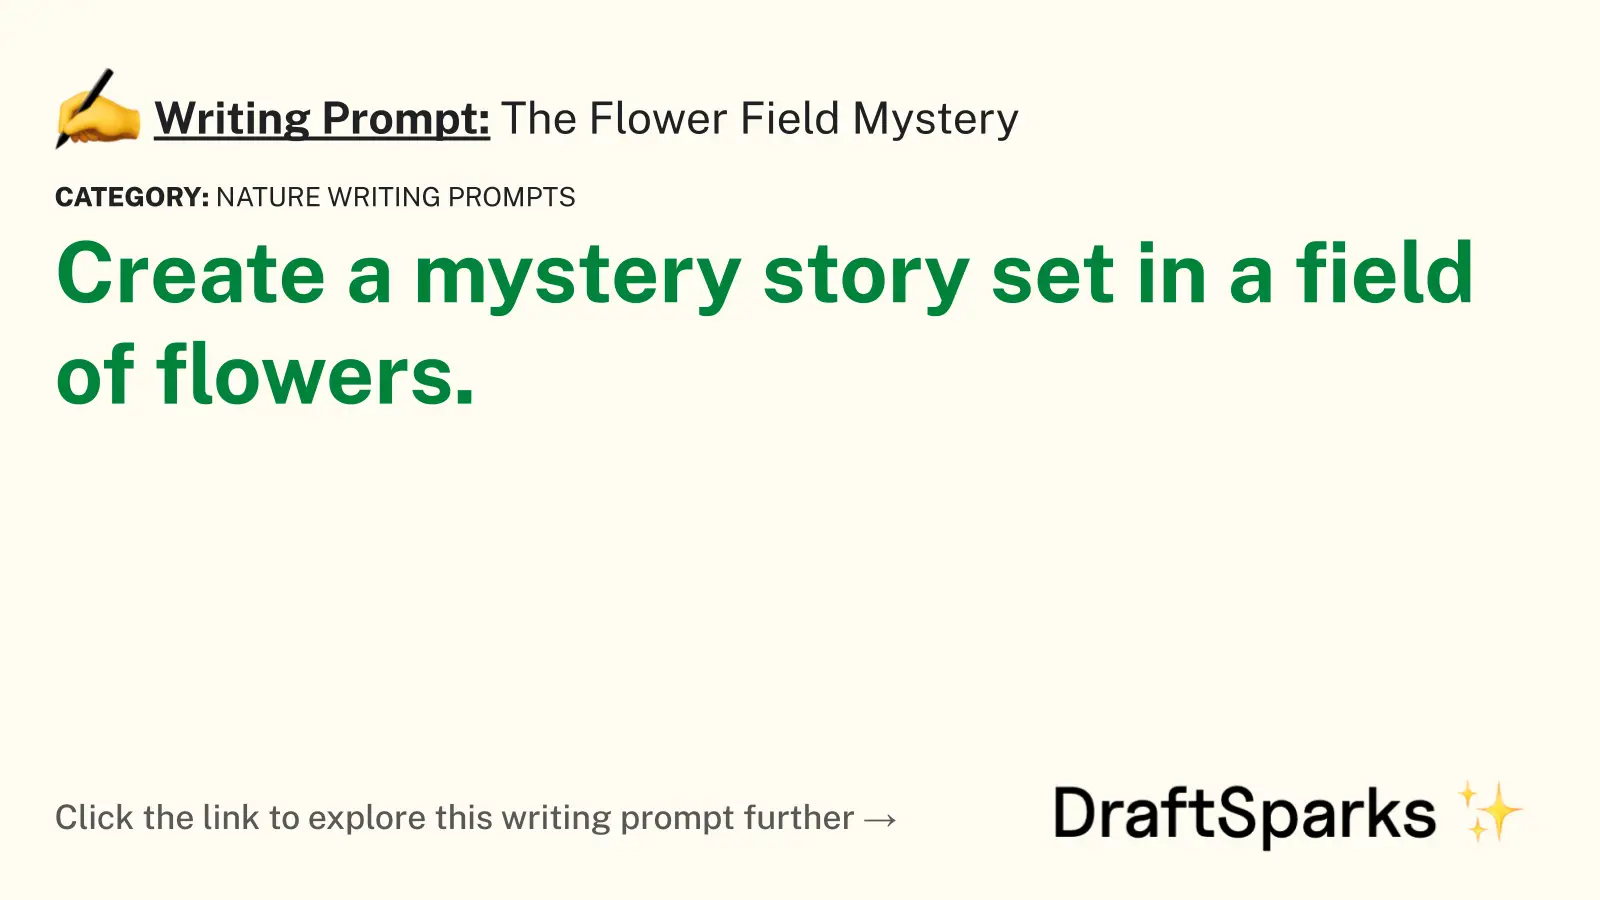 The Flower Field Mystery